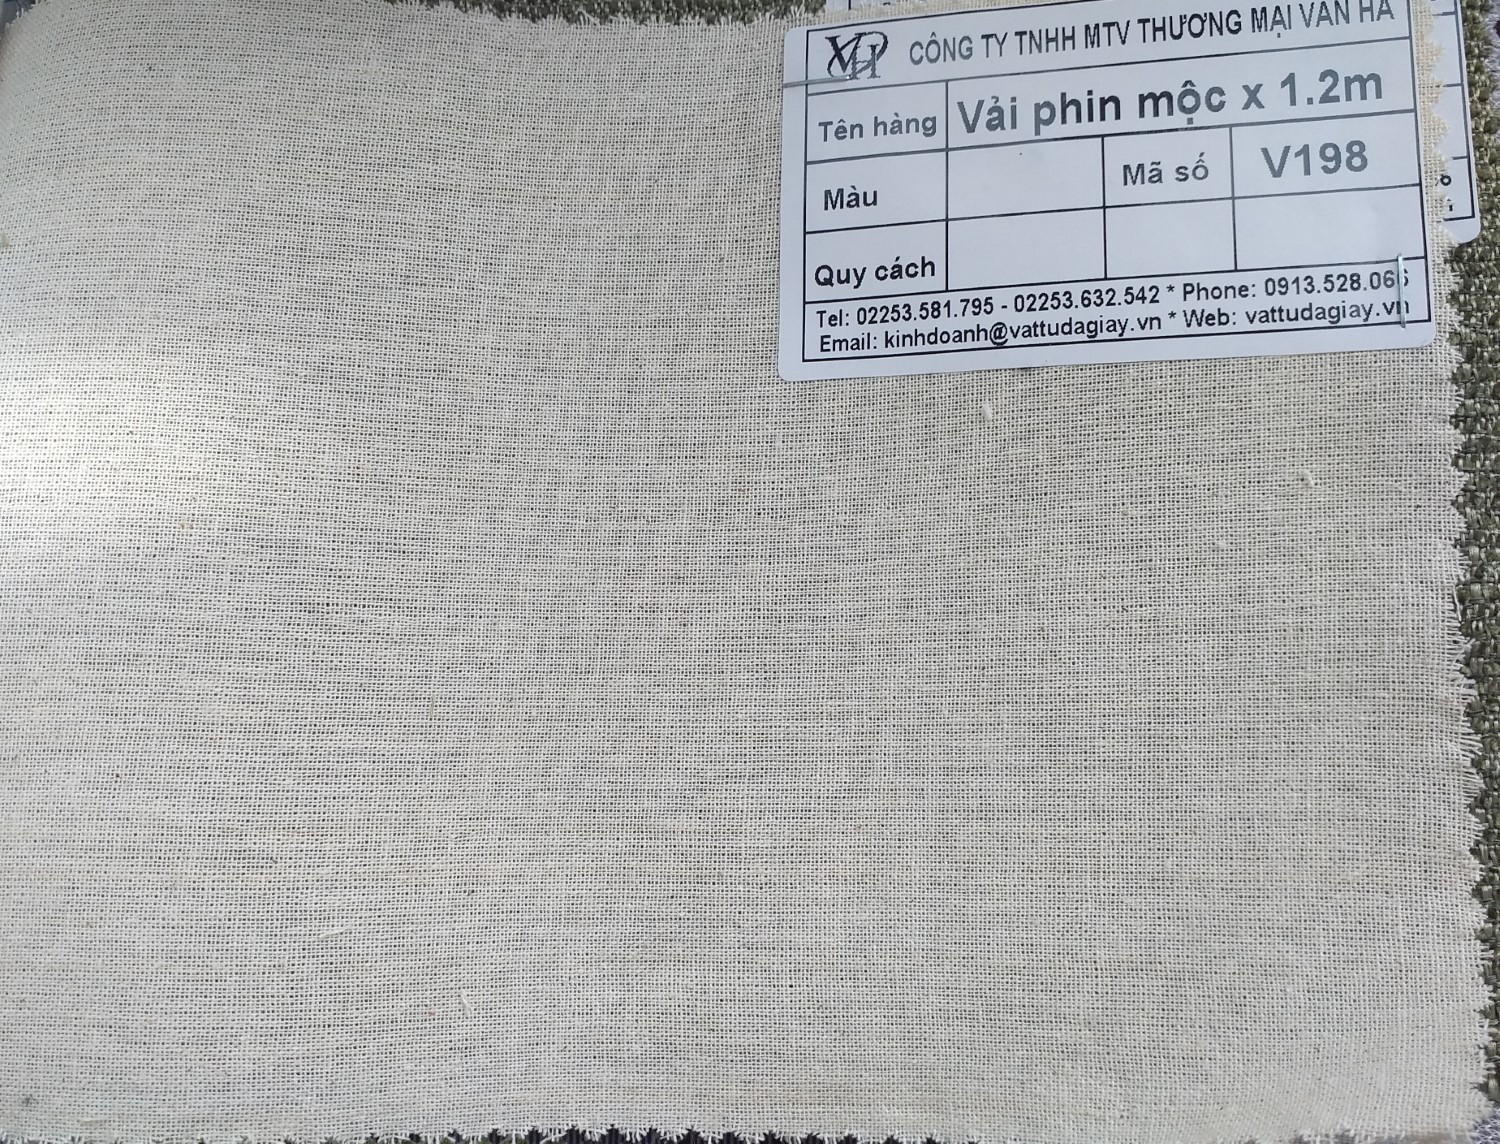 vai phin moc kho 12m ma v198 - Tổng hợp 1 số dòng vải bạt có sẵn tại Vân Hà